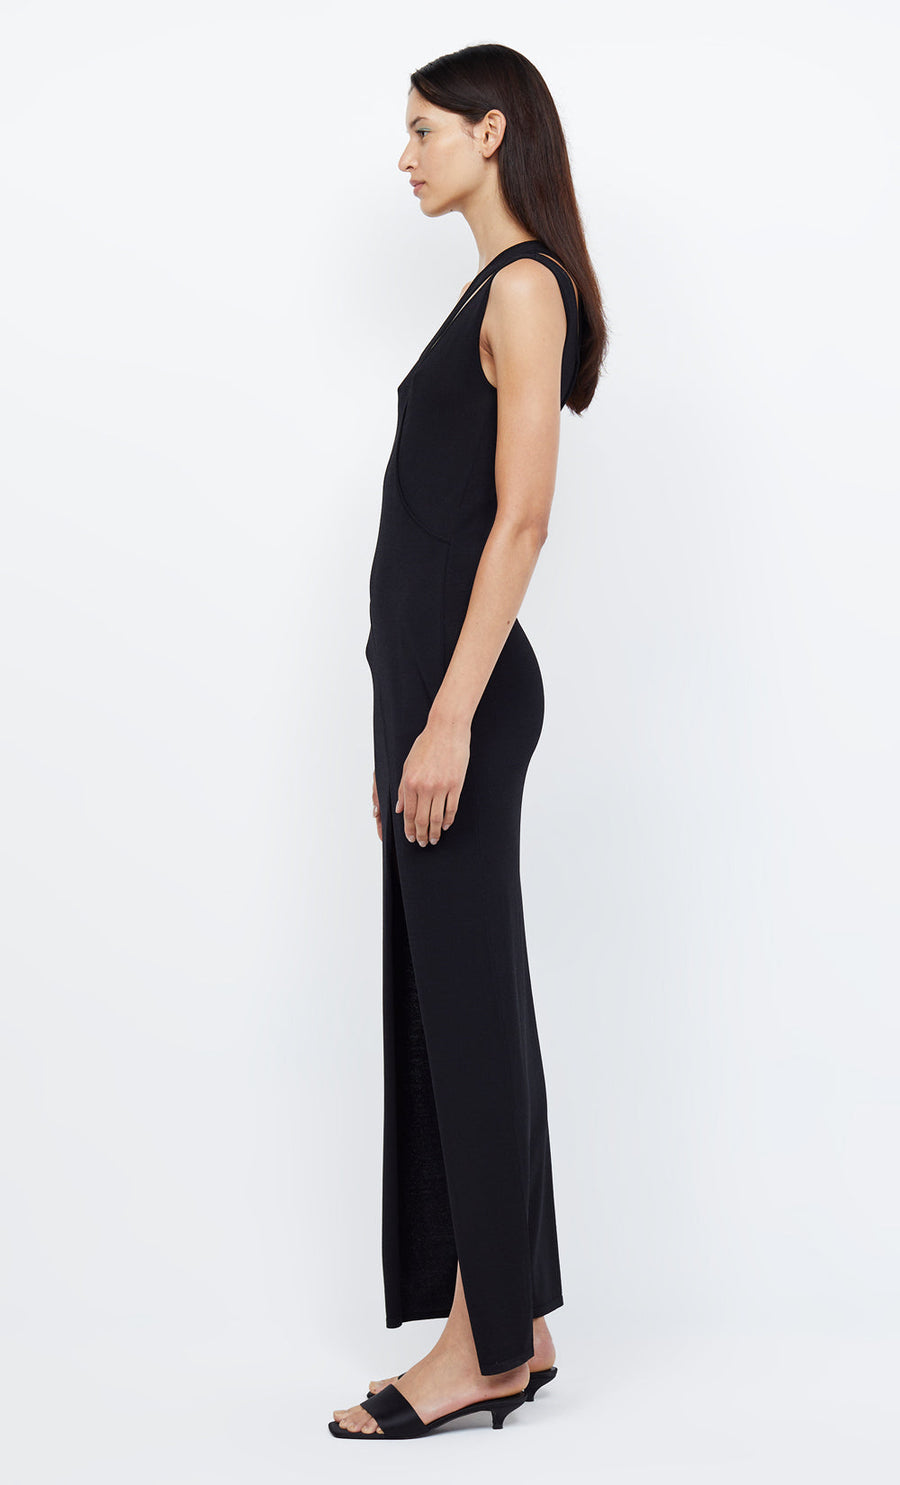 BEC + BRIDGE - Mira Aysm Knit Maxi Dress in Black